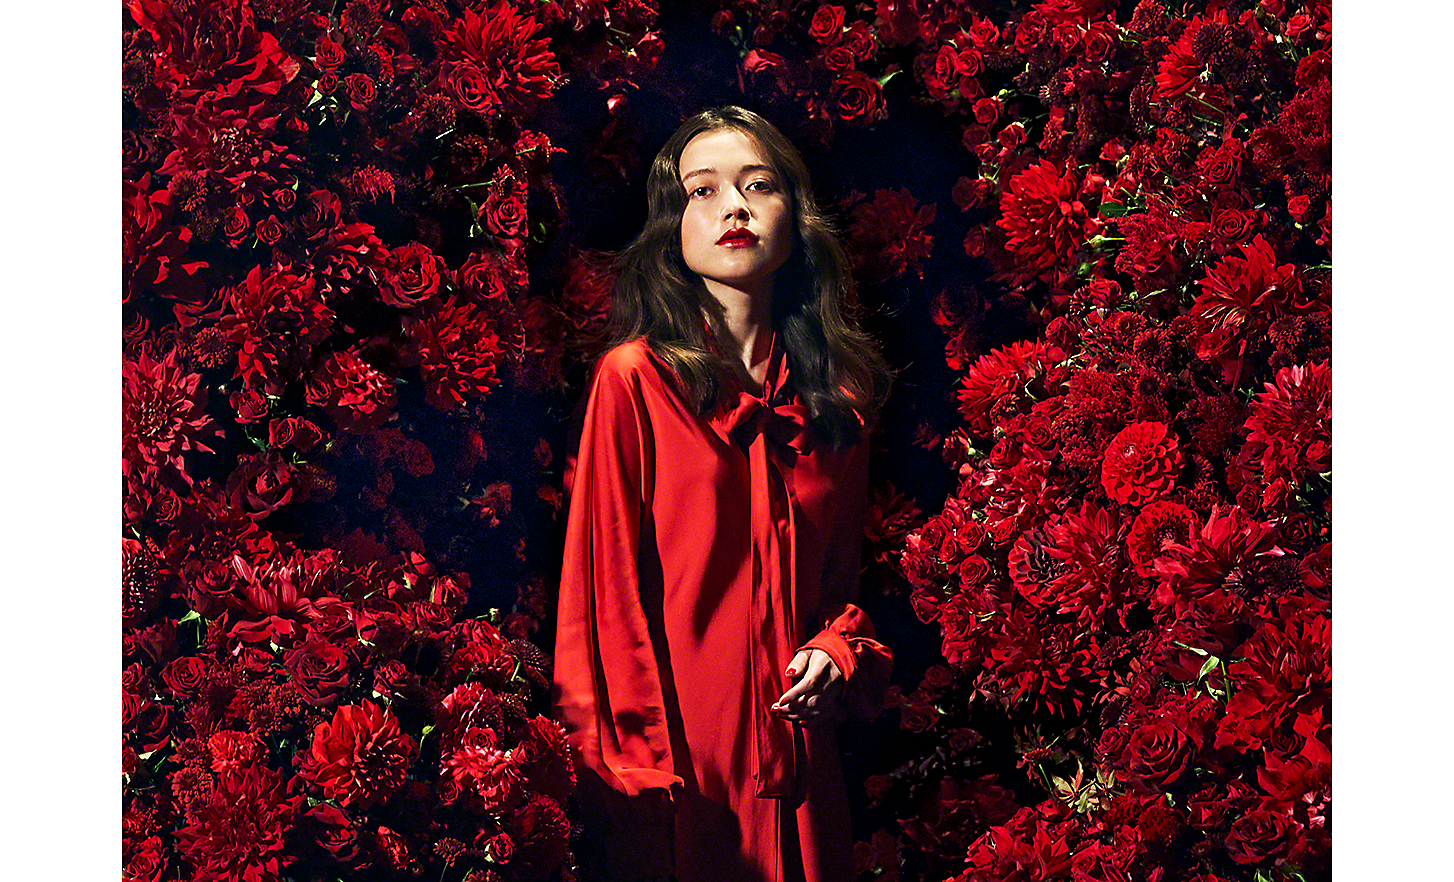 Bild av en kvinna som är klädd i rött och omgiven av röda blommor, tagen med 100 mm